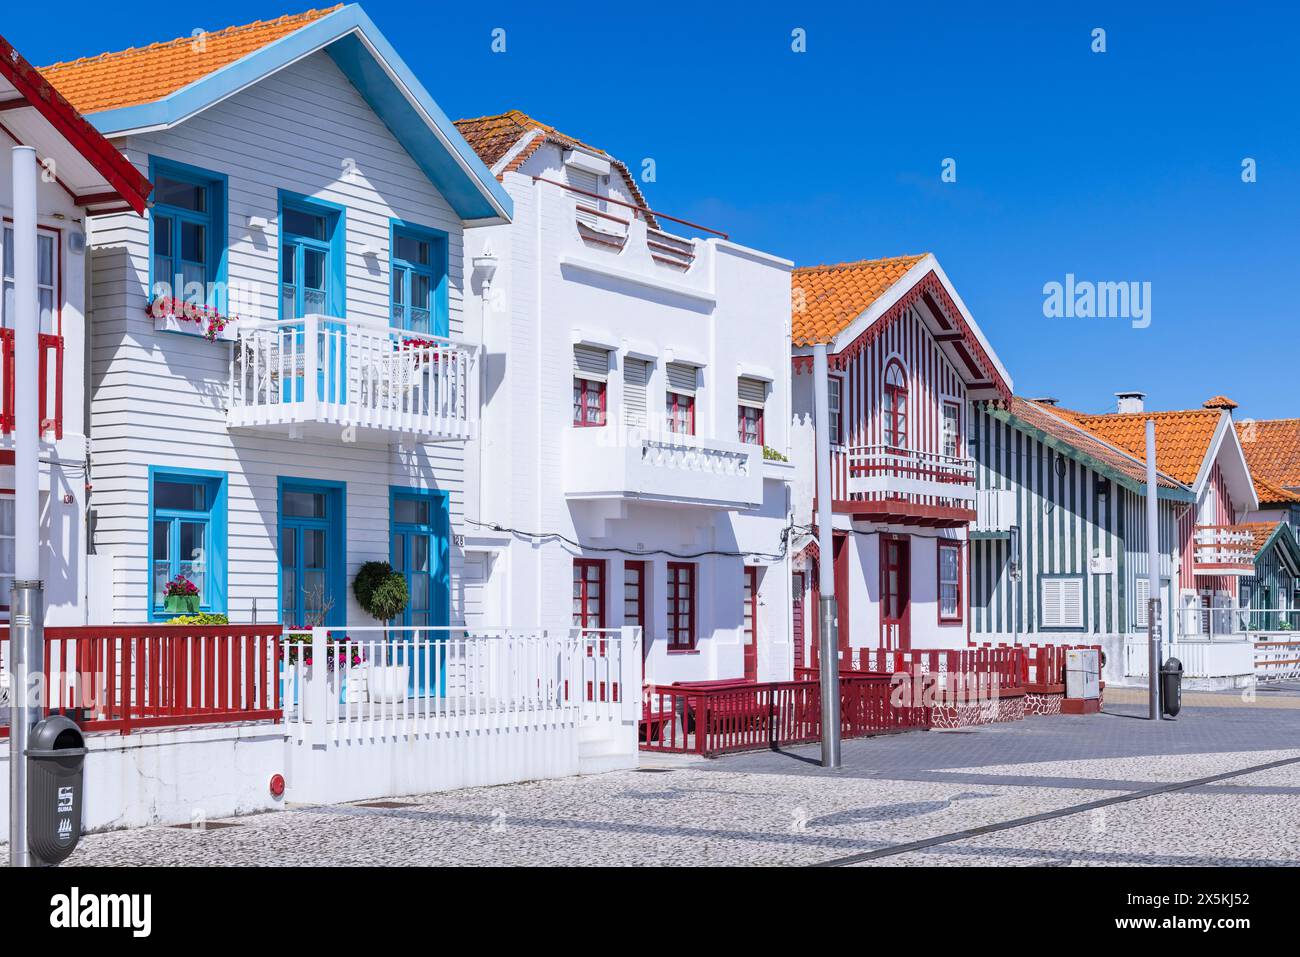 Portugal, Aveiro, Costa Nova do Prado. Maisons de plage peintes de couleurs vives. Banque D'Images